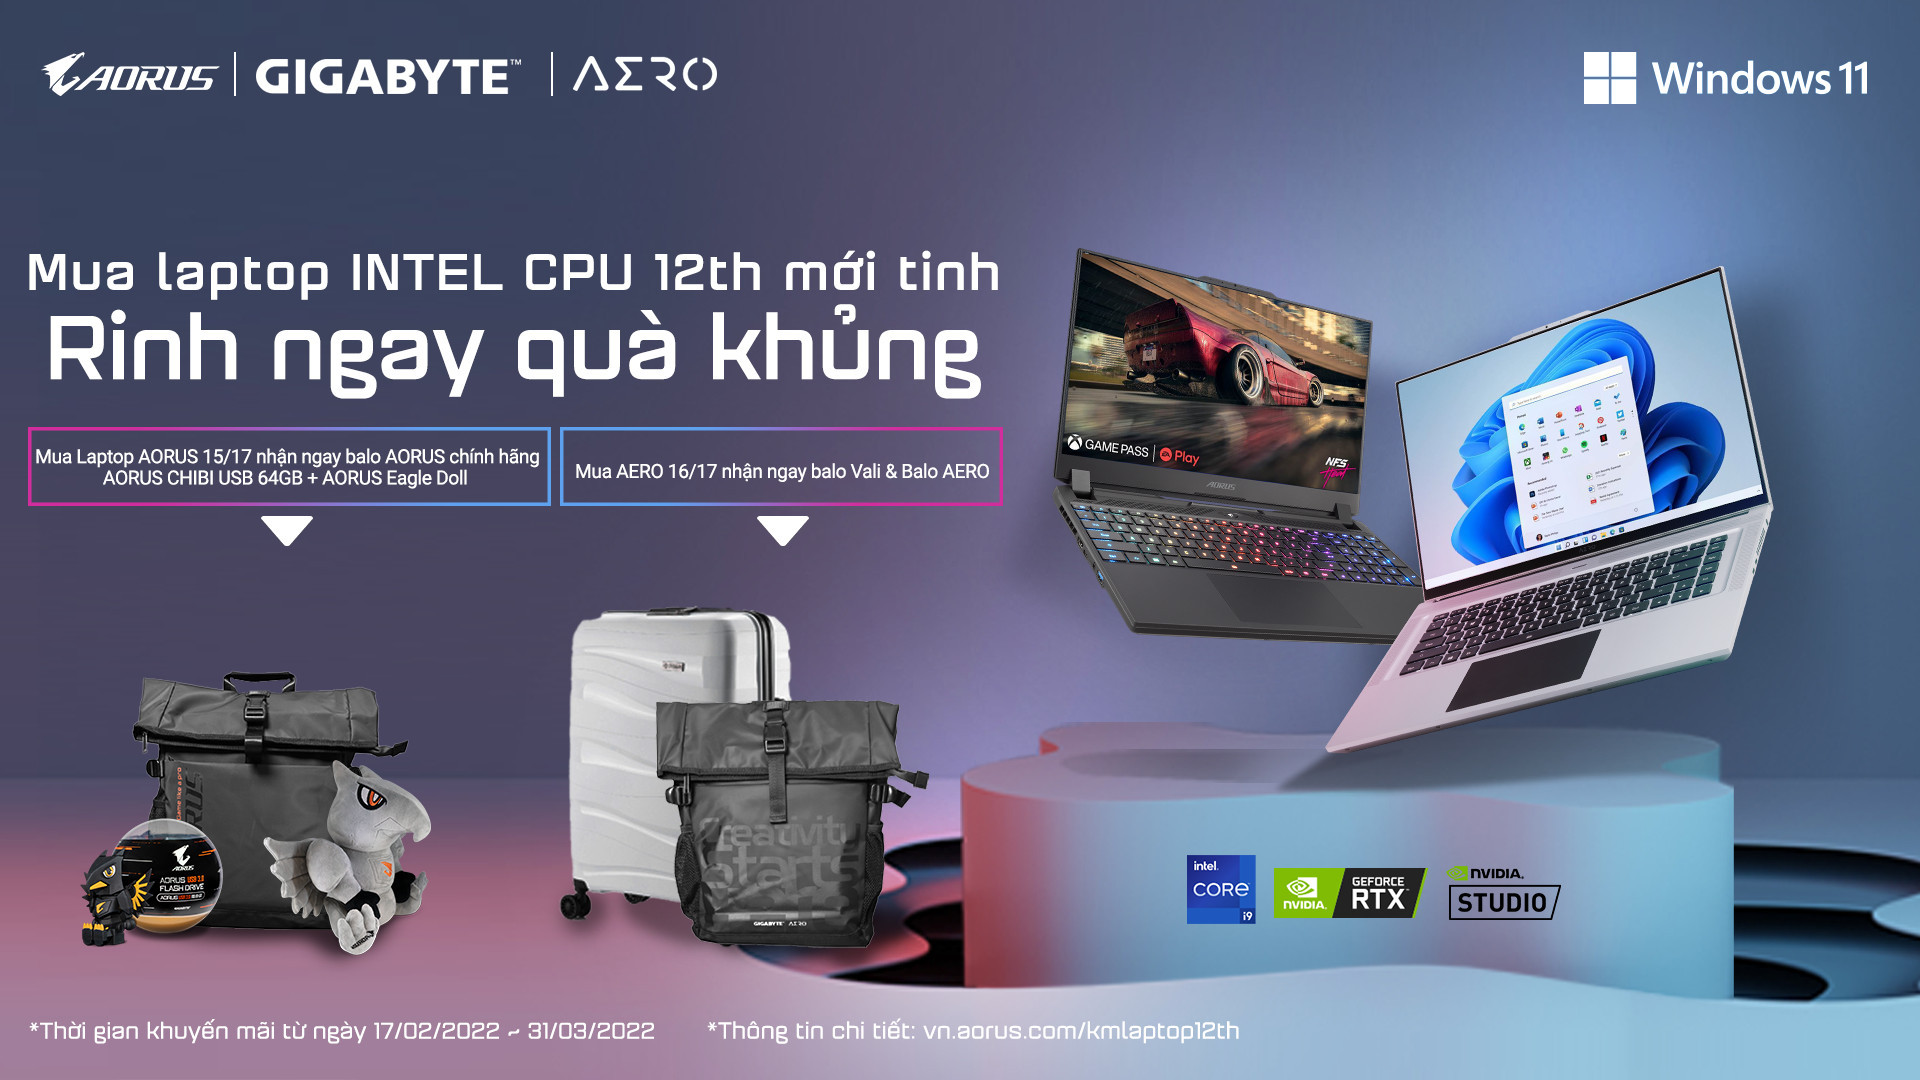 Chương trình khuyến mãi từ GIGABYTE: “Mua laptop INTEL CPU 12th mới tinh, rinh ngay quà khủng”